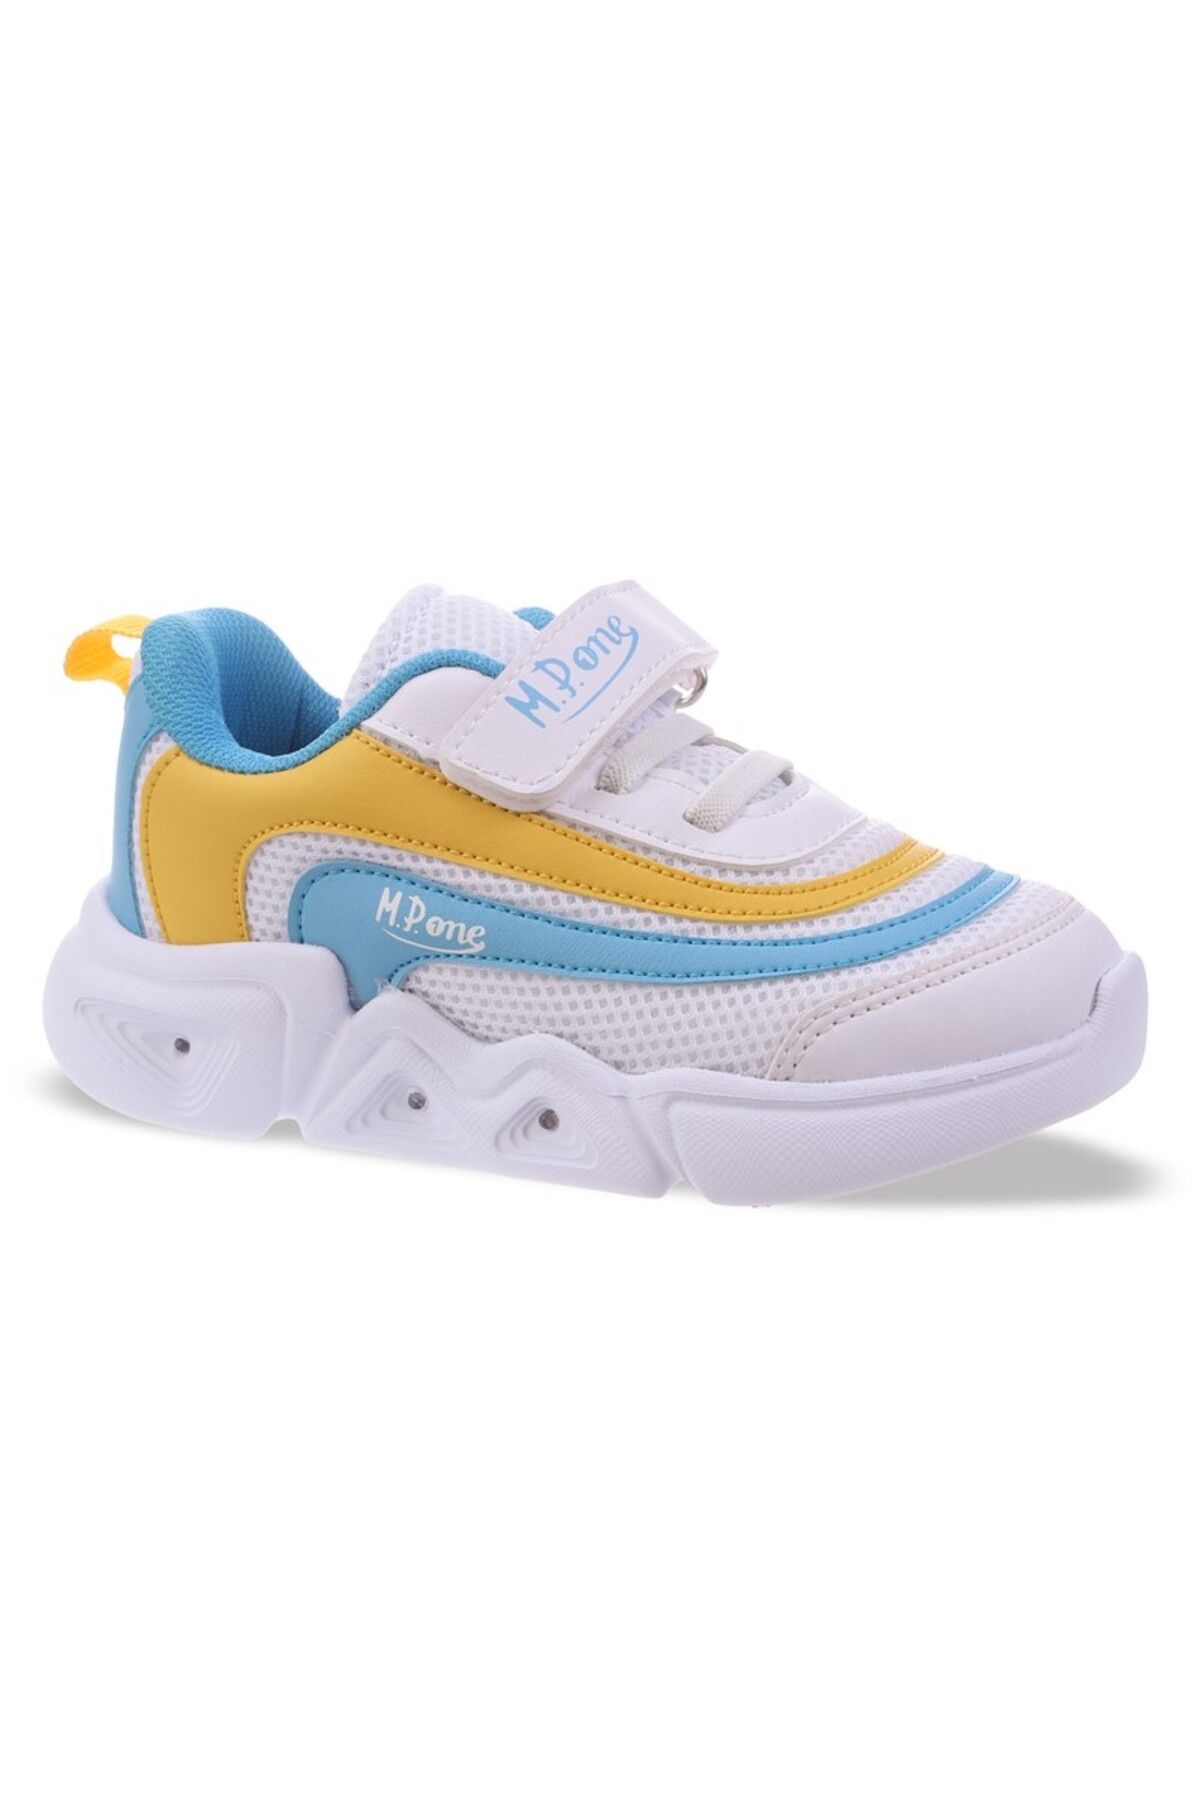 Yenikoza 241-3229p Çocuk Spor Ayakkabı Beyaz-mavi